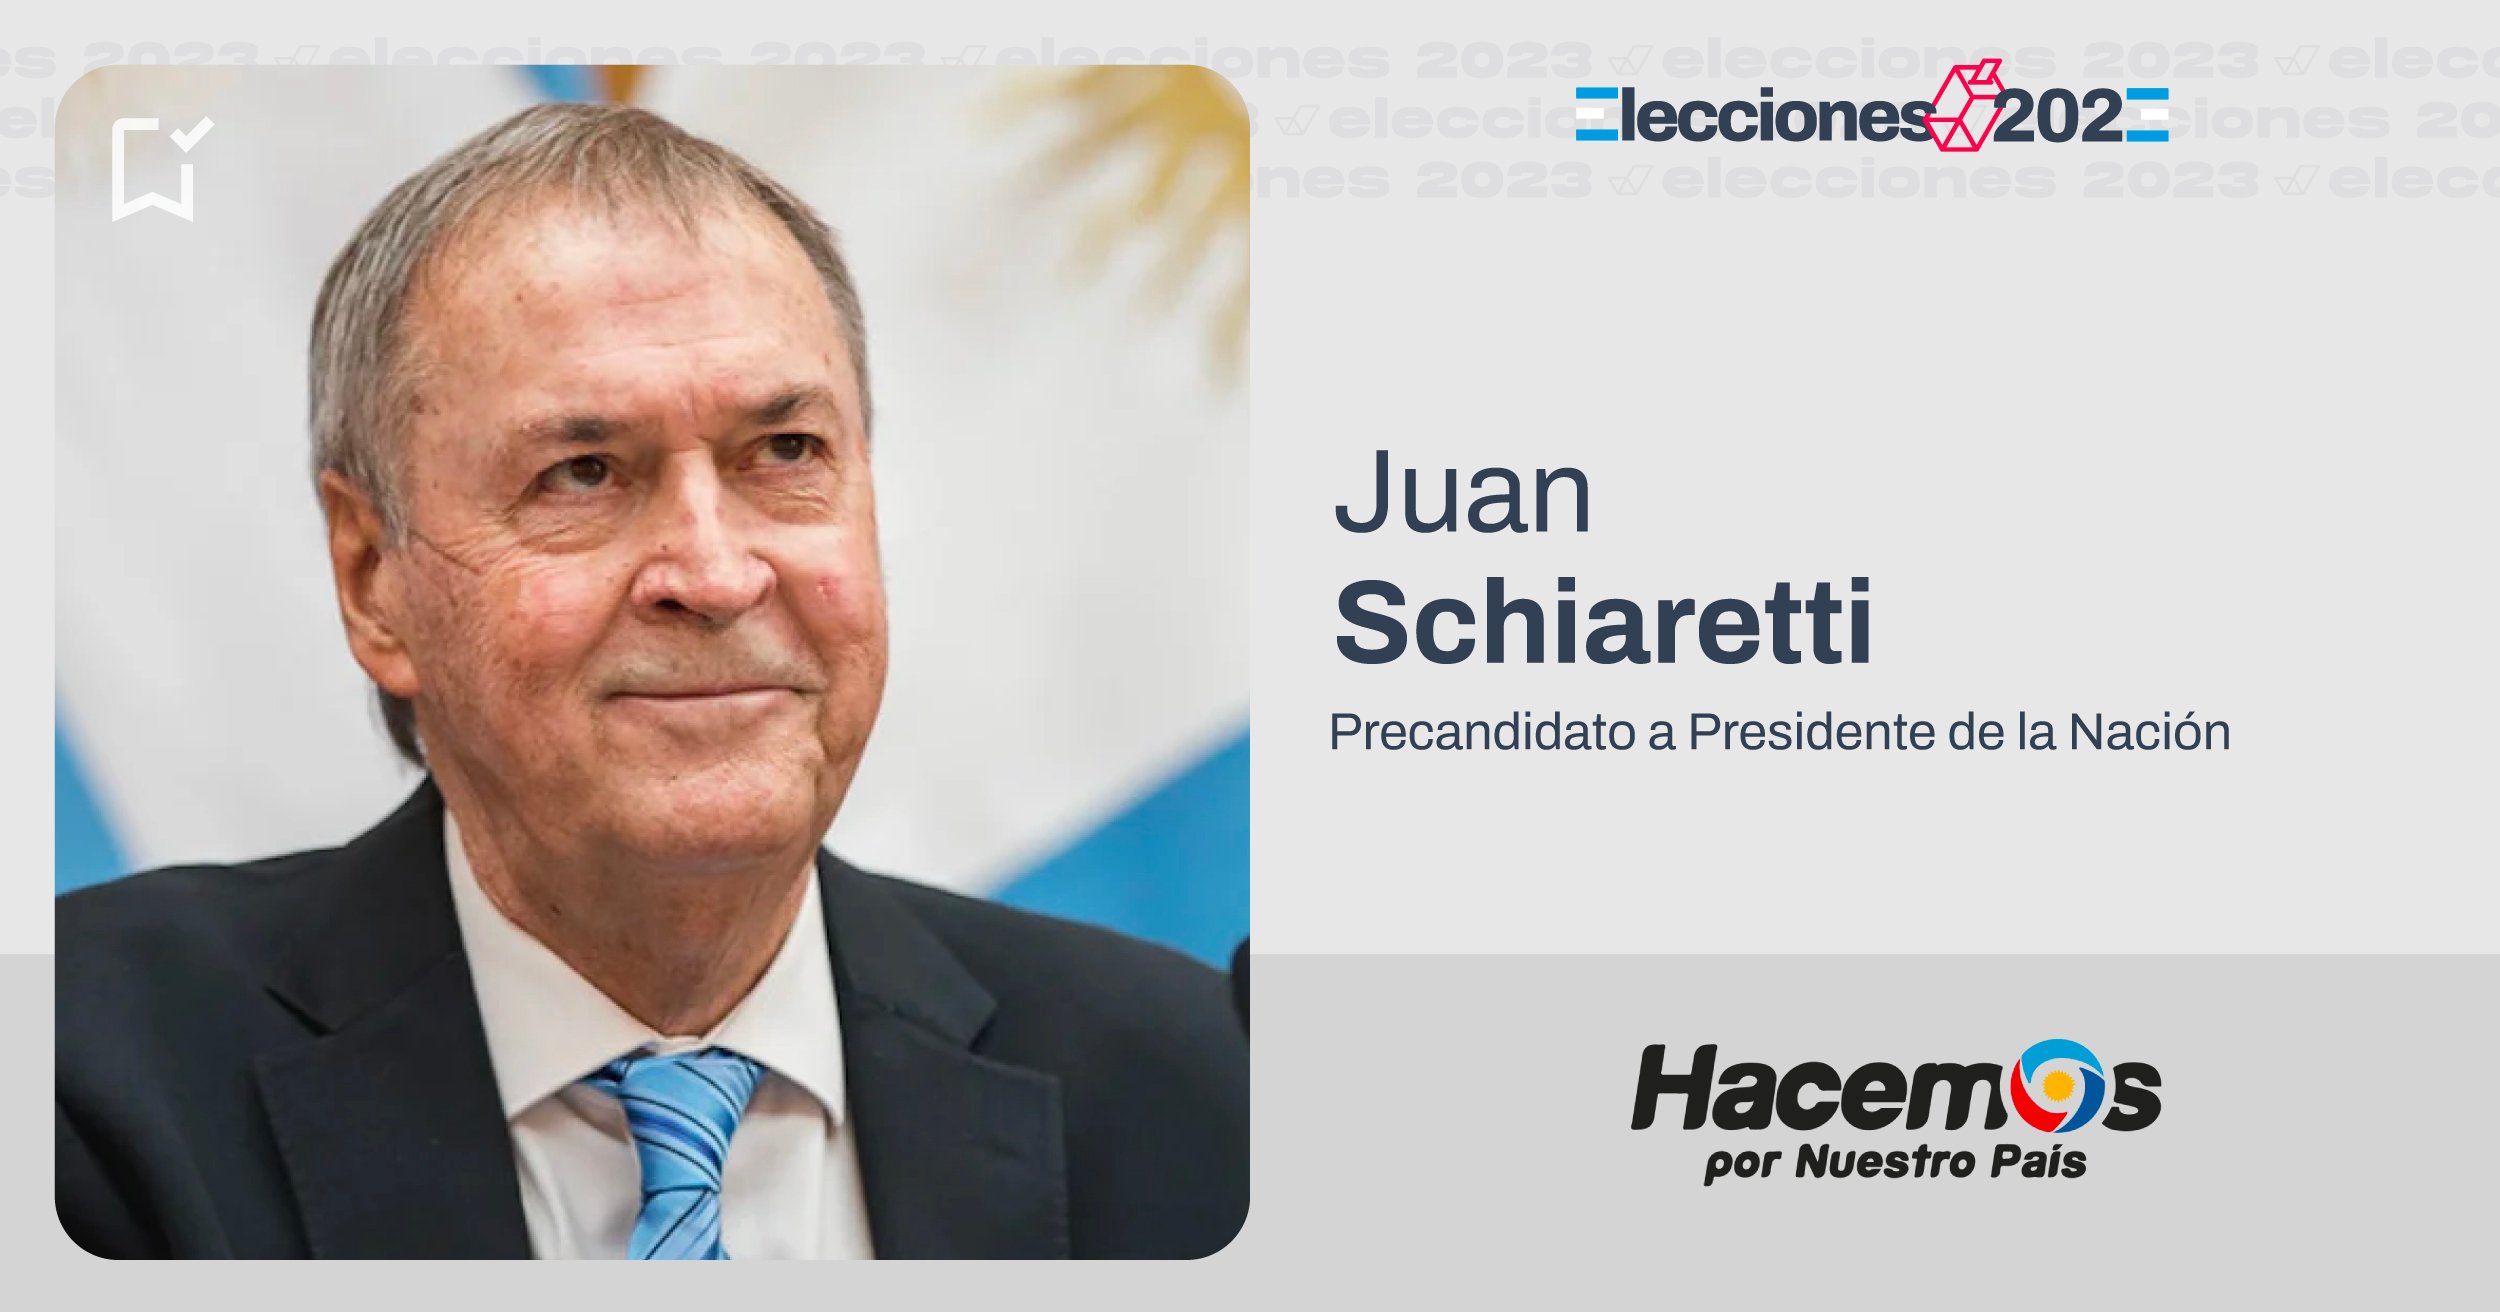 Quién es Juan Schiaretti? - Chequeado